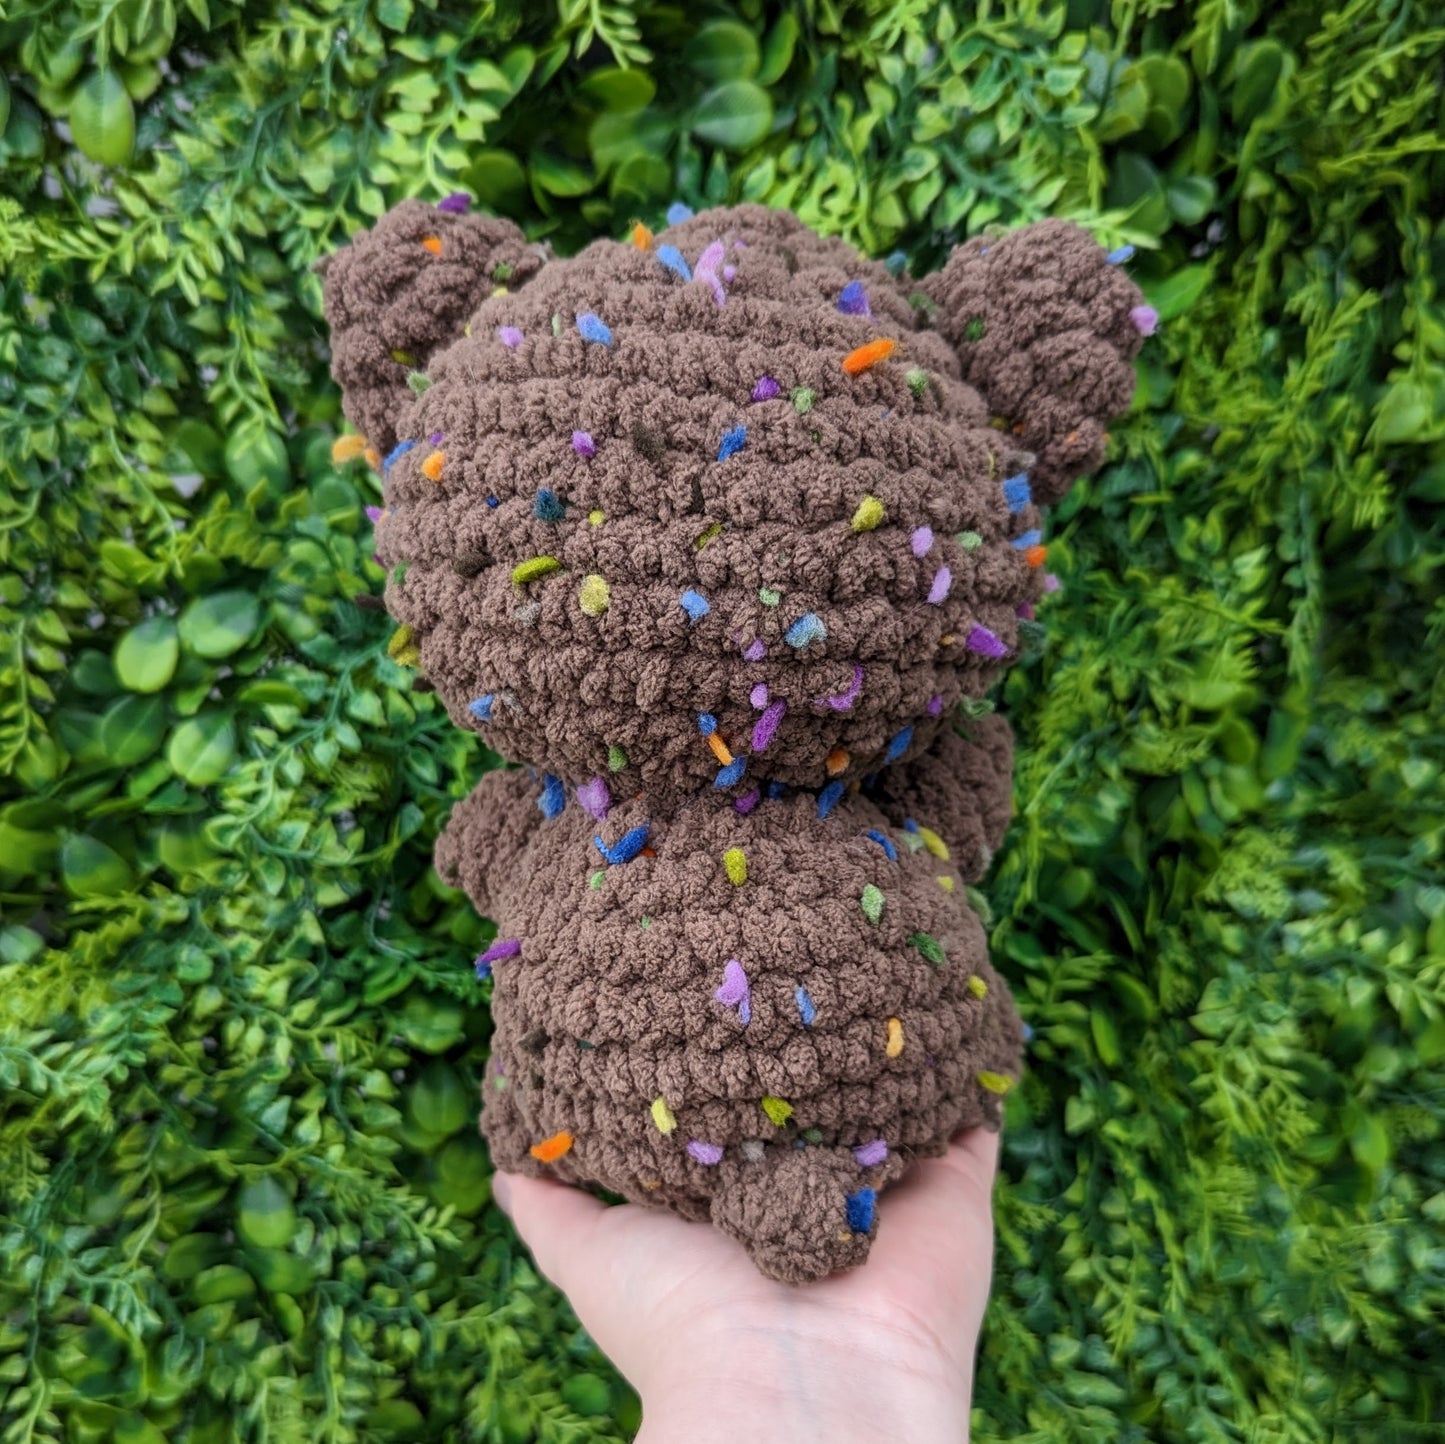 Confetti Teddy Bear Crochet Plushie